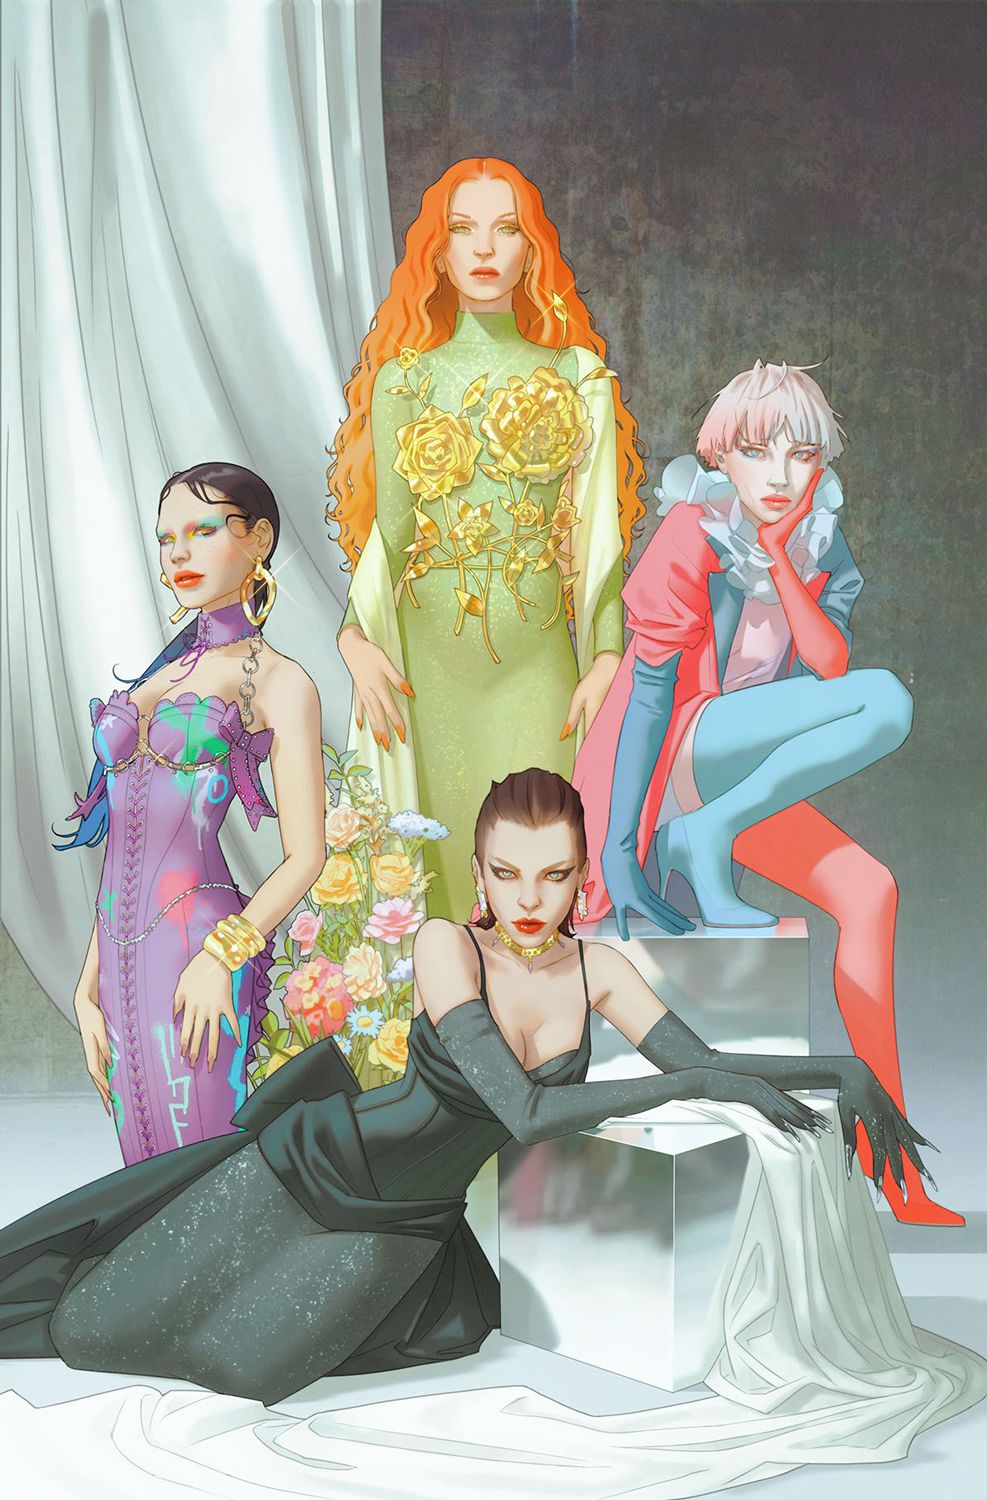 Punchline, Poison Ivy, Harley Quin och Catwoman poserar i tematiskt passande couture på en variant av omslag till Gotham City Sirens.